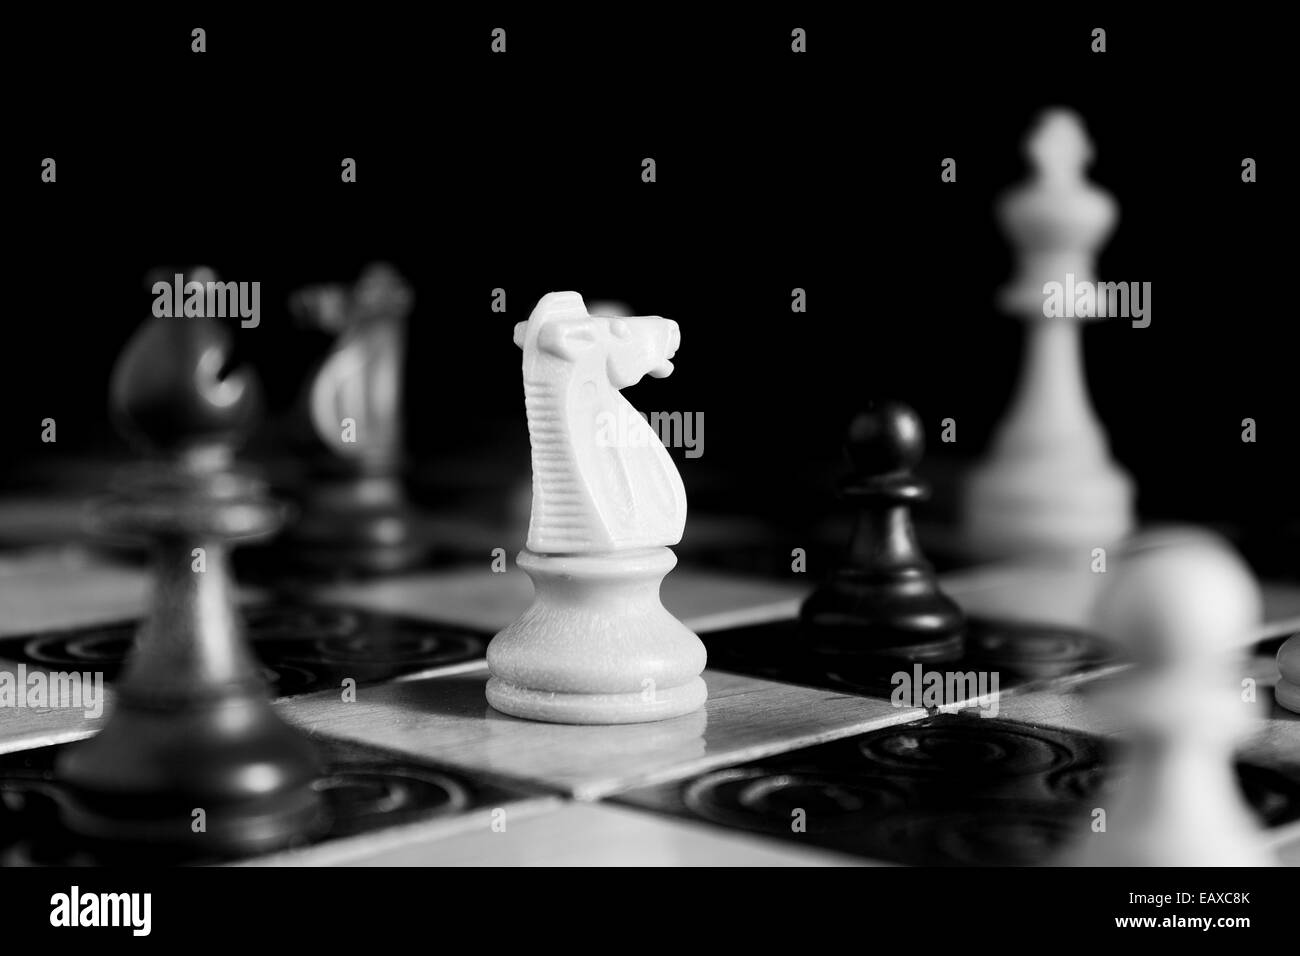 Fotografiert auf einem Schachbrett Schach Stockfoto